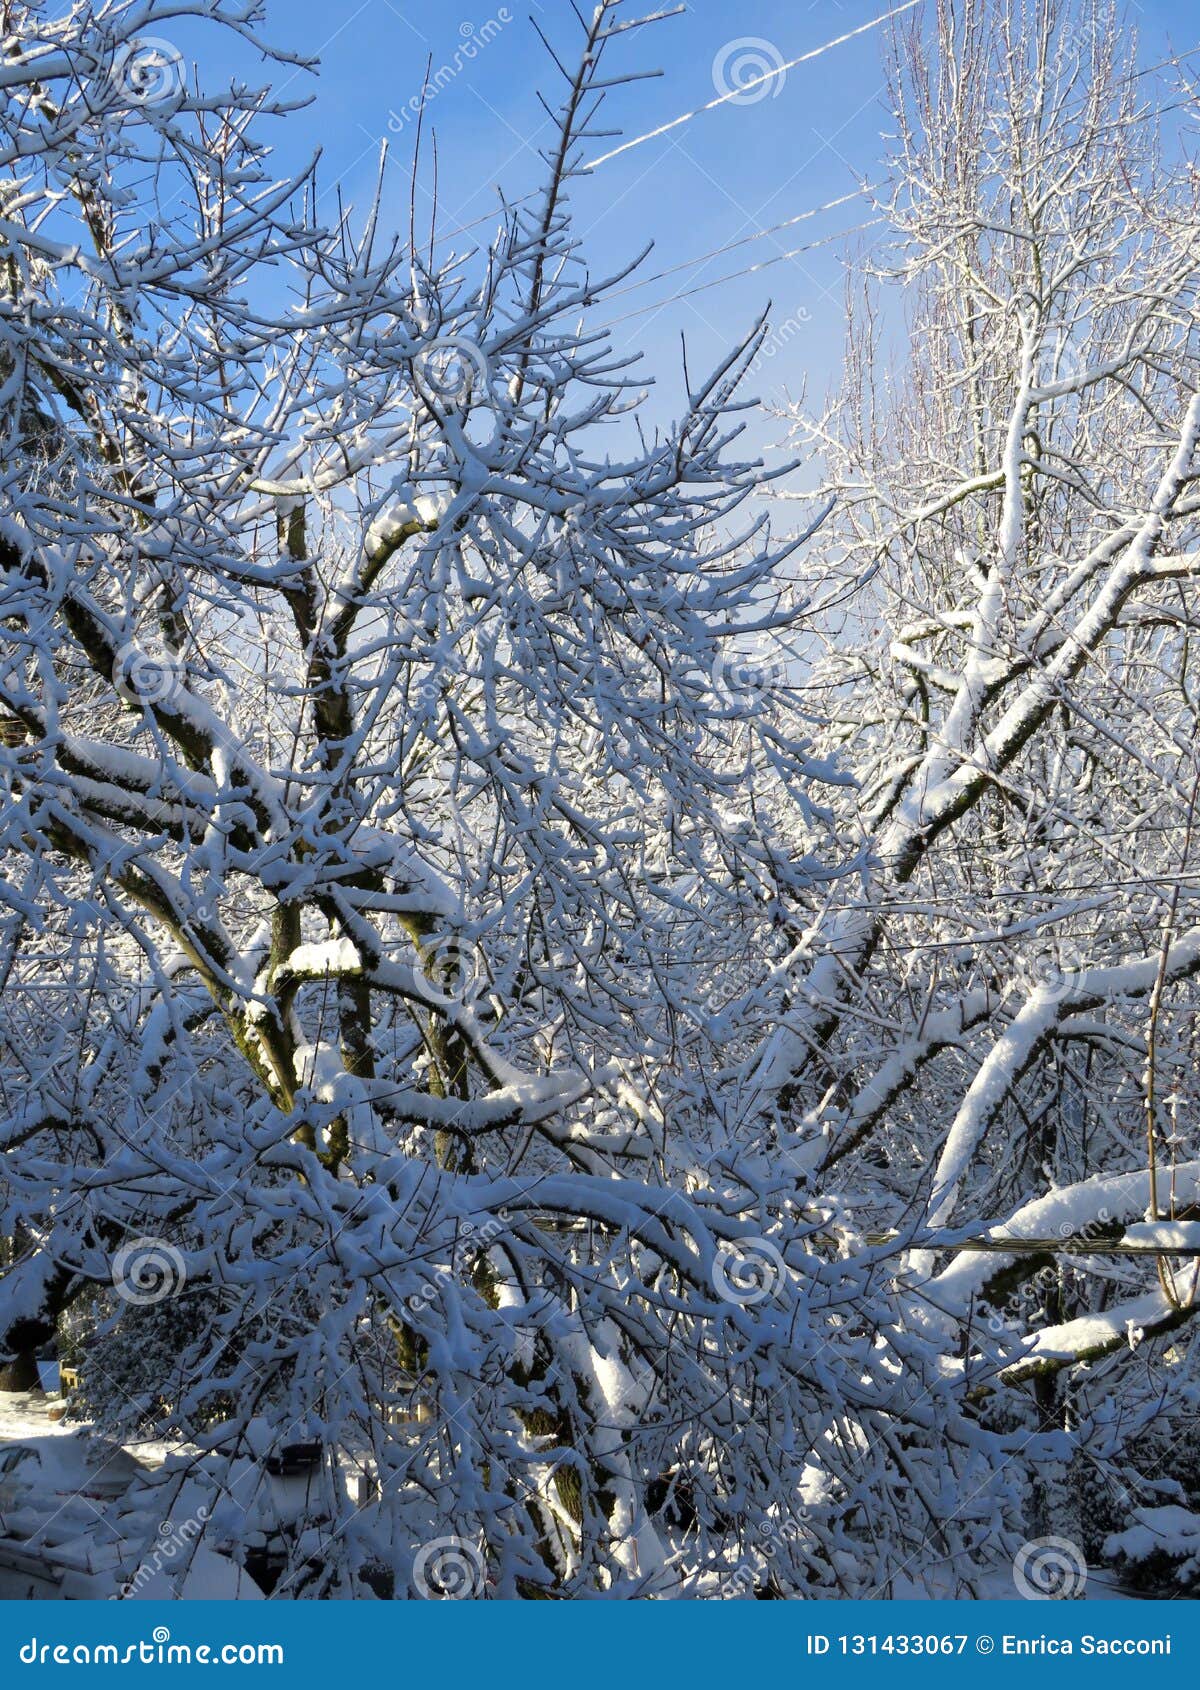 La Magie De L'hiver Et Le Soleil Après La Neige Image stock